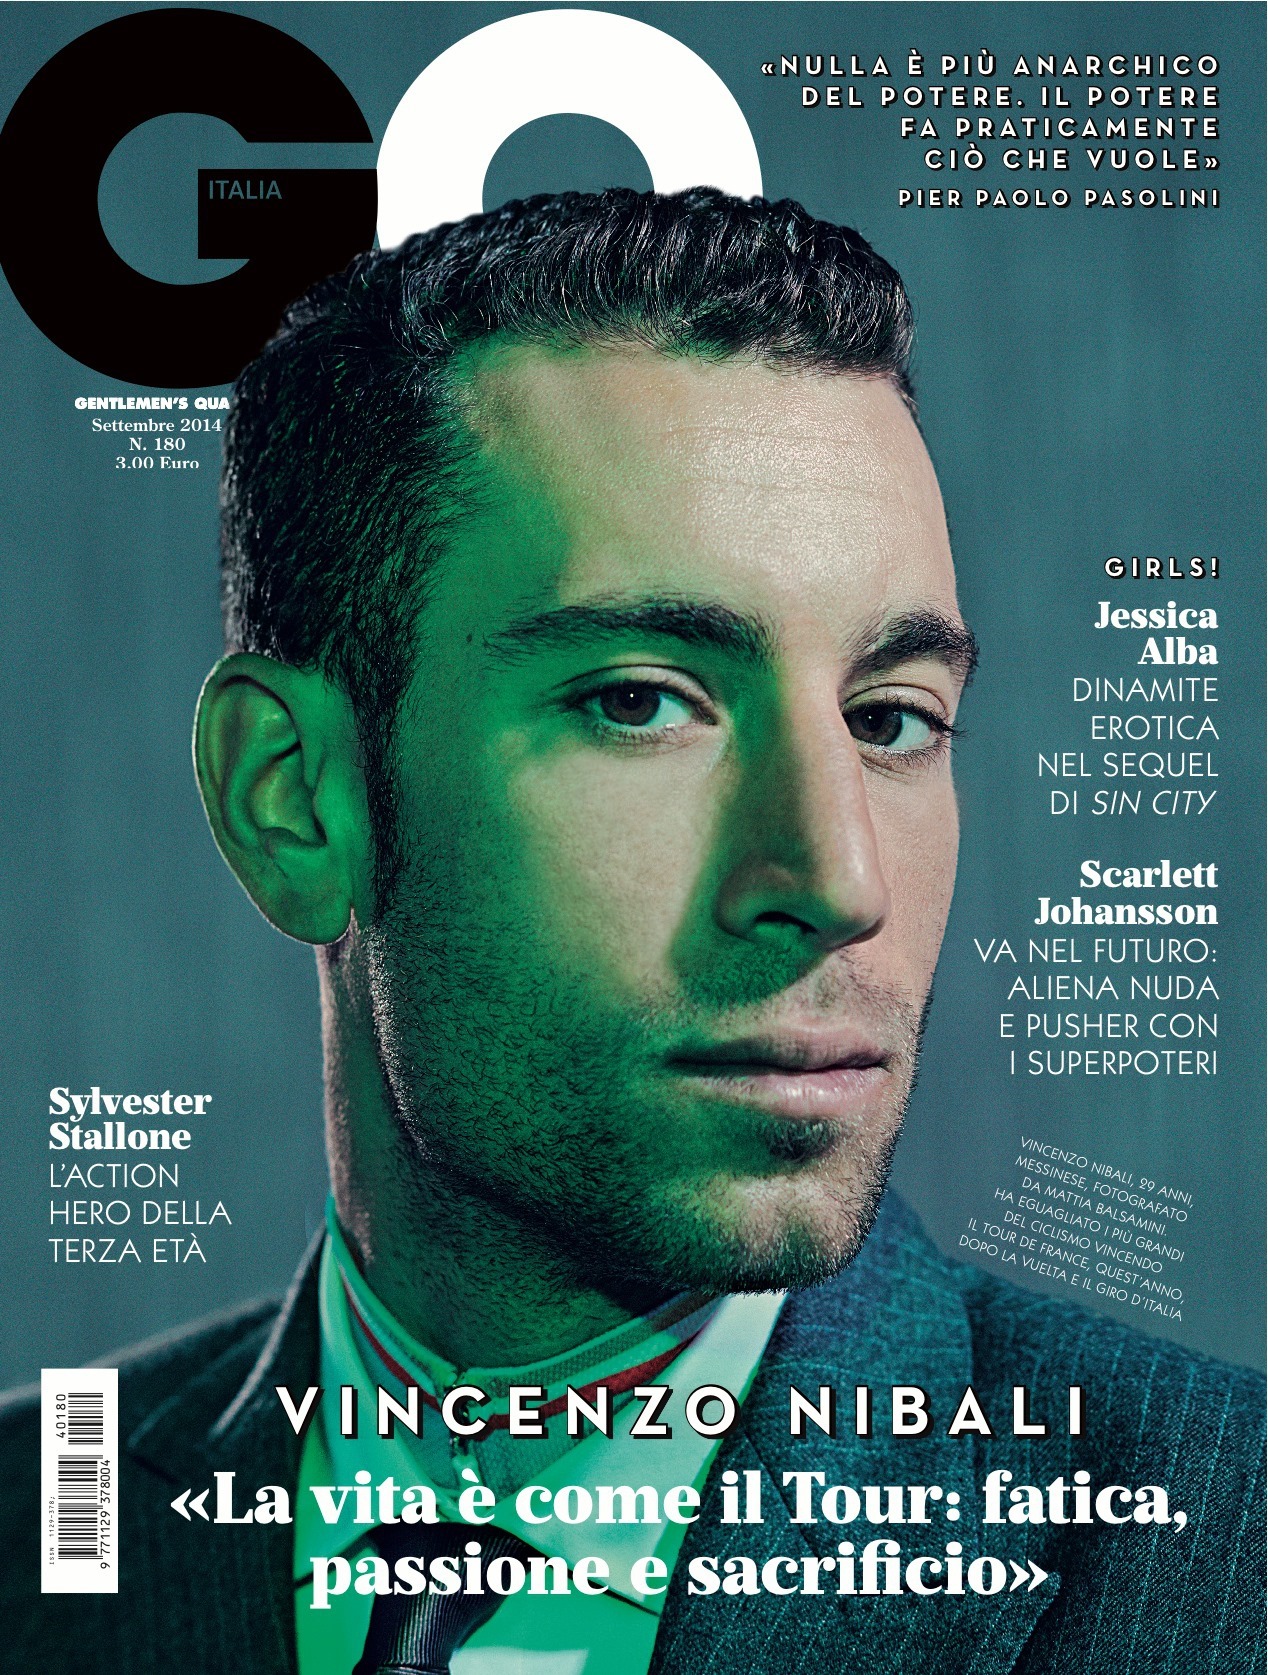 GQ Italia September 2014 “Vincenzo Nibali” | Mattia Balsamini | GQ Italia | Andrea Porro | Numerique Retouch Photo Retouching Studio